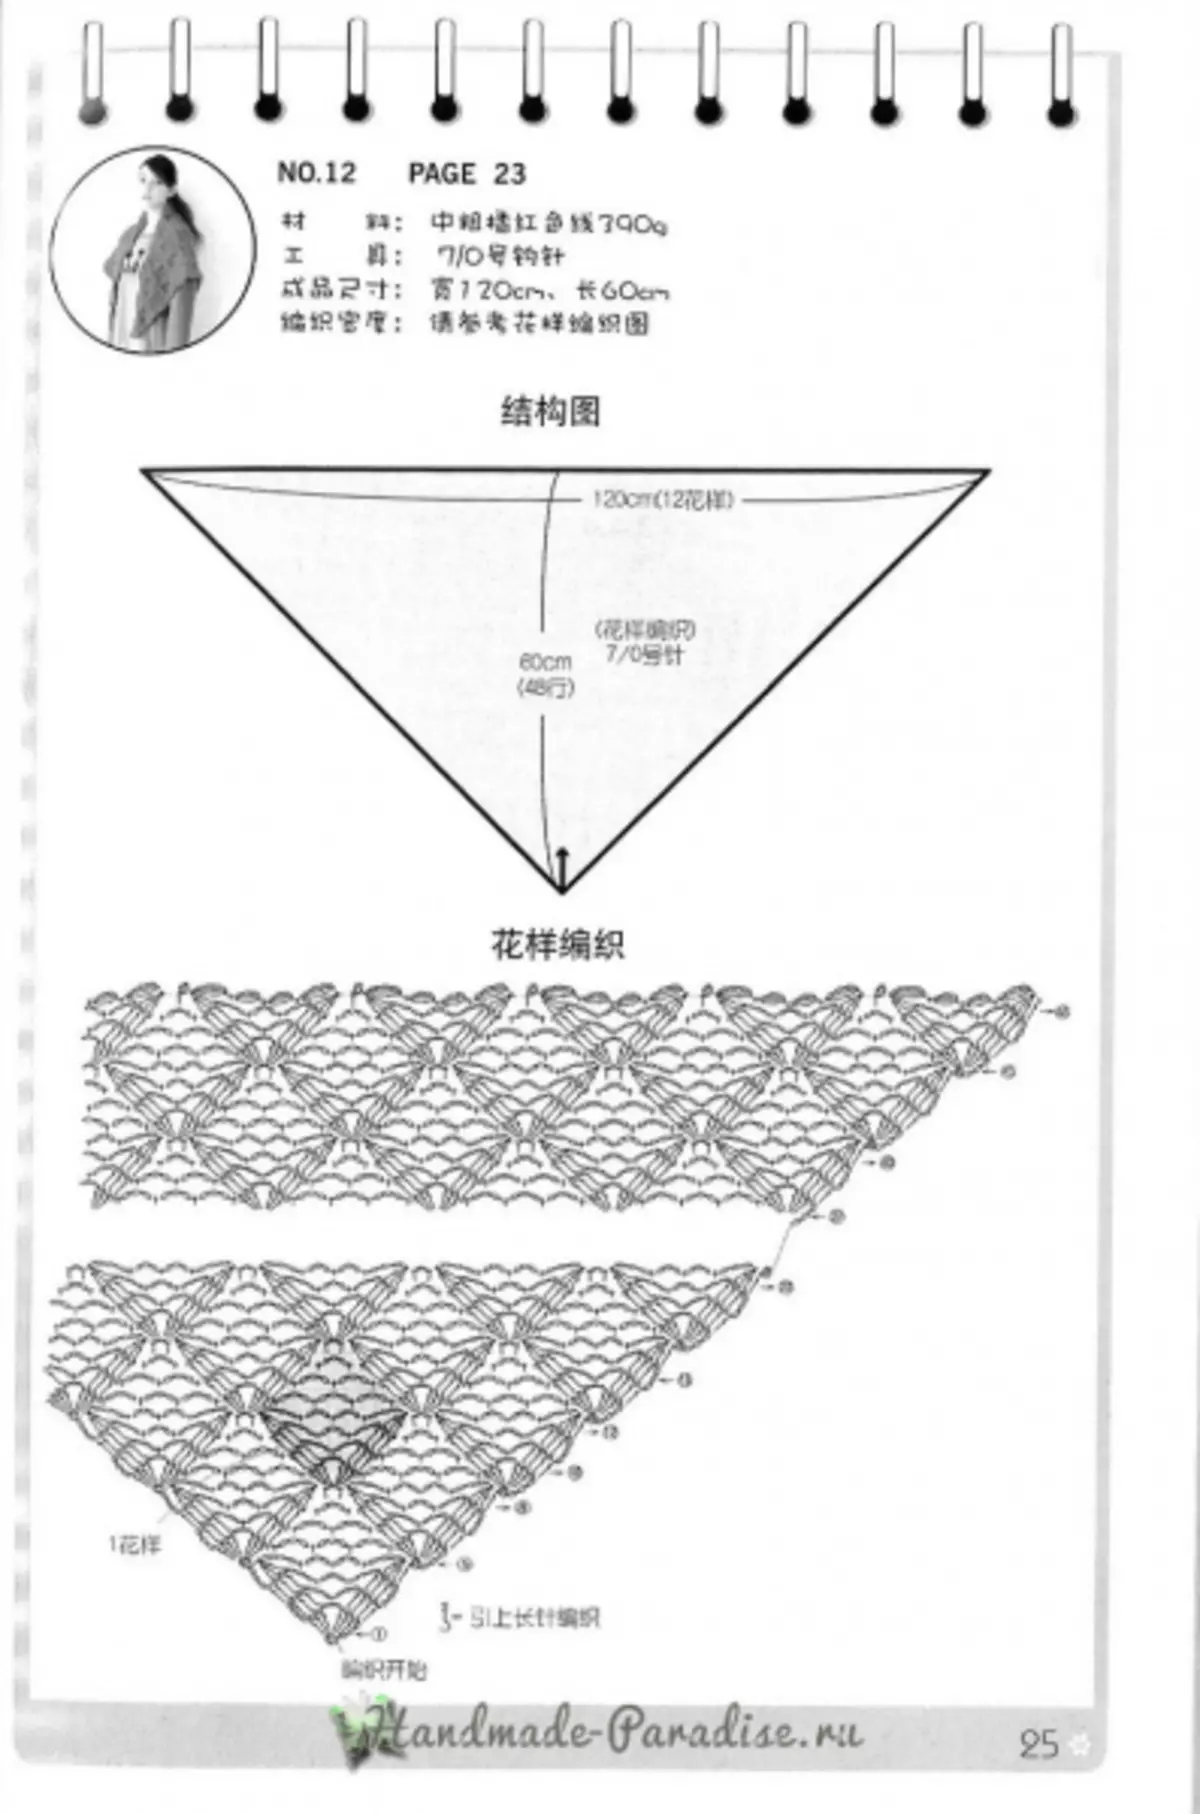 Tricotat cape și poncho. Revista japoneză cu scheme